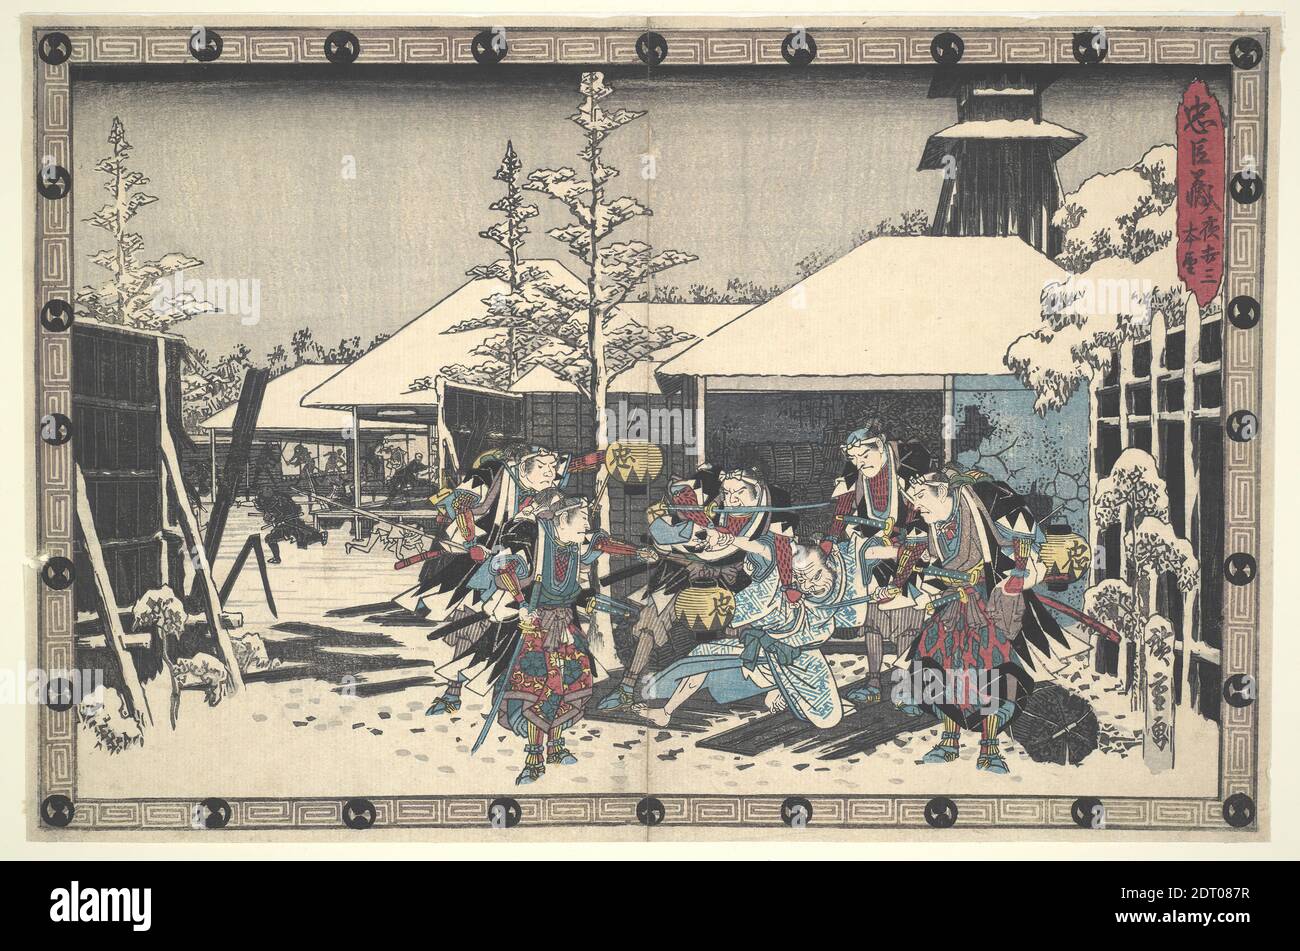 Artista: Utagawa Hiroshige, japonés, 1797–1858, la Liga leal de cuarenta y siete Ronin (Chushingura) acto XI, no. 3: El ataque nocturno Moronao incautado por los Ronin, ca. 1843–45, impresión de bloque de madera policromada, hoja: 9 1/2 × 14 1/4 pulg. (24.2 × 36.2 cm), Japón, japonés, período Edo (1615–1868), trabajos en papel - impresiones Foto de stock